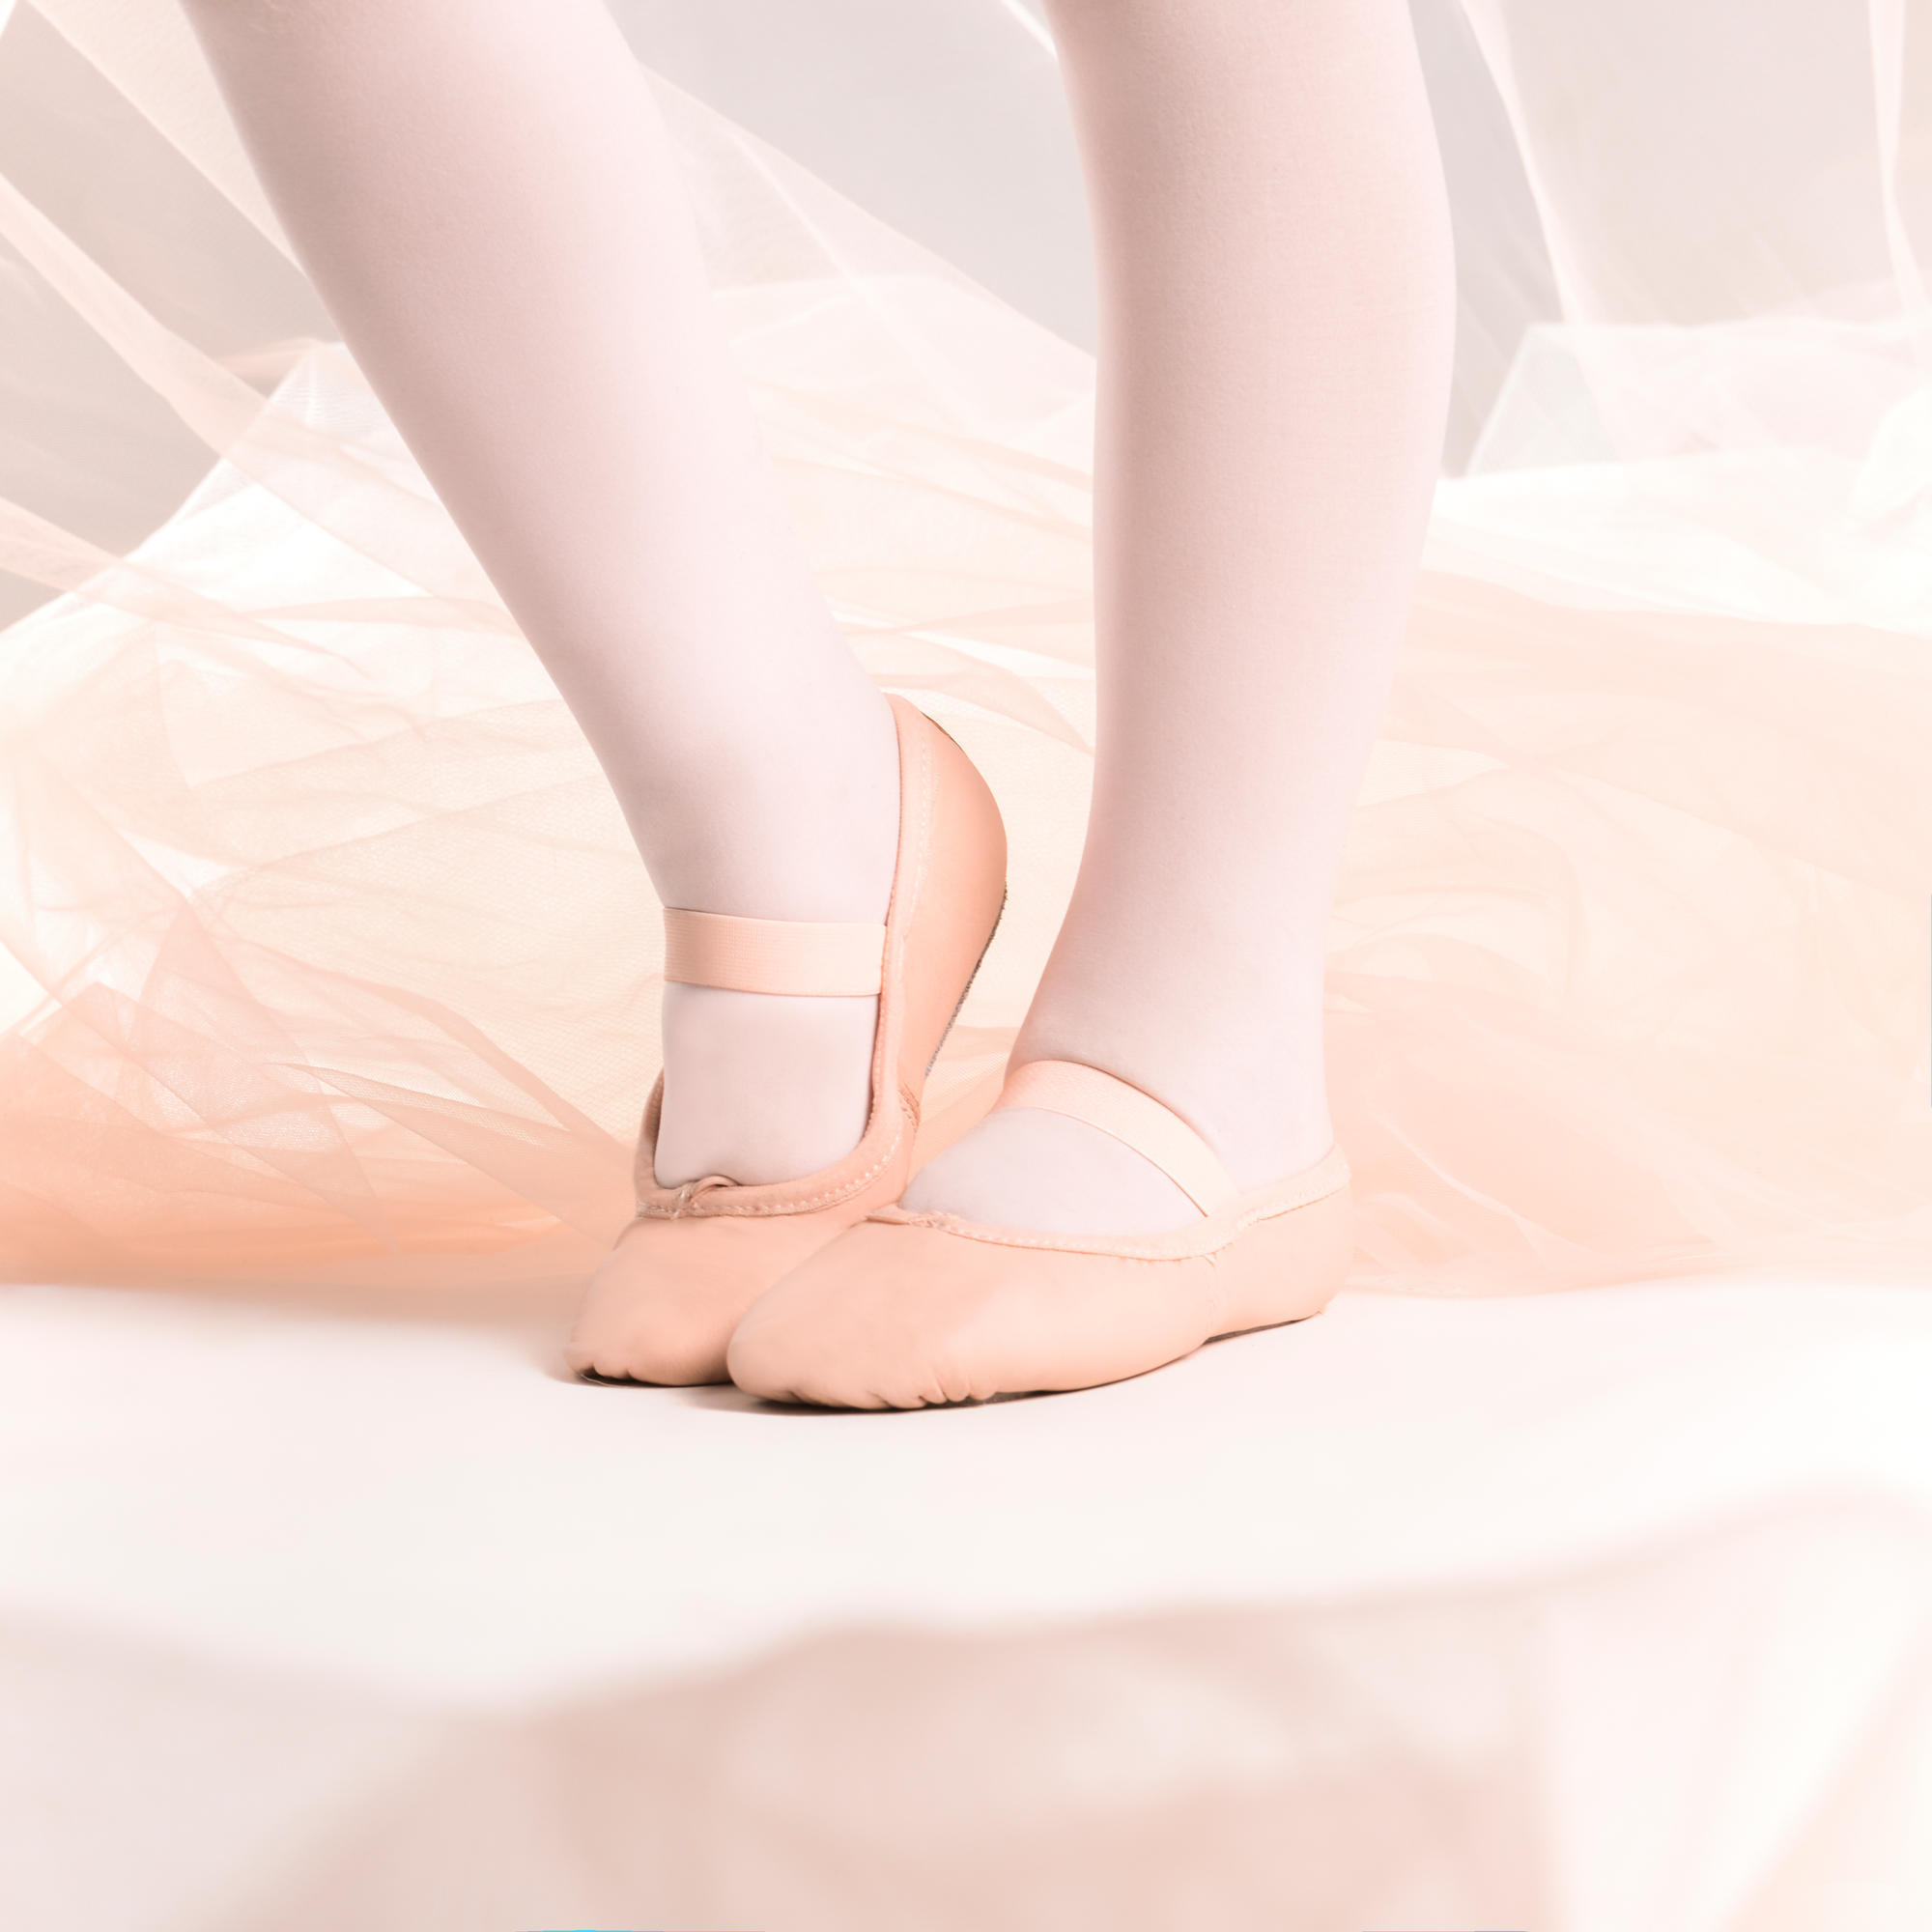 Demi-poante balet piele talpă întreagă mărimile 25-40 roz decathlon.ro